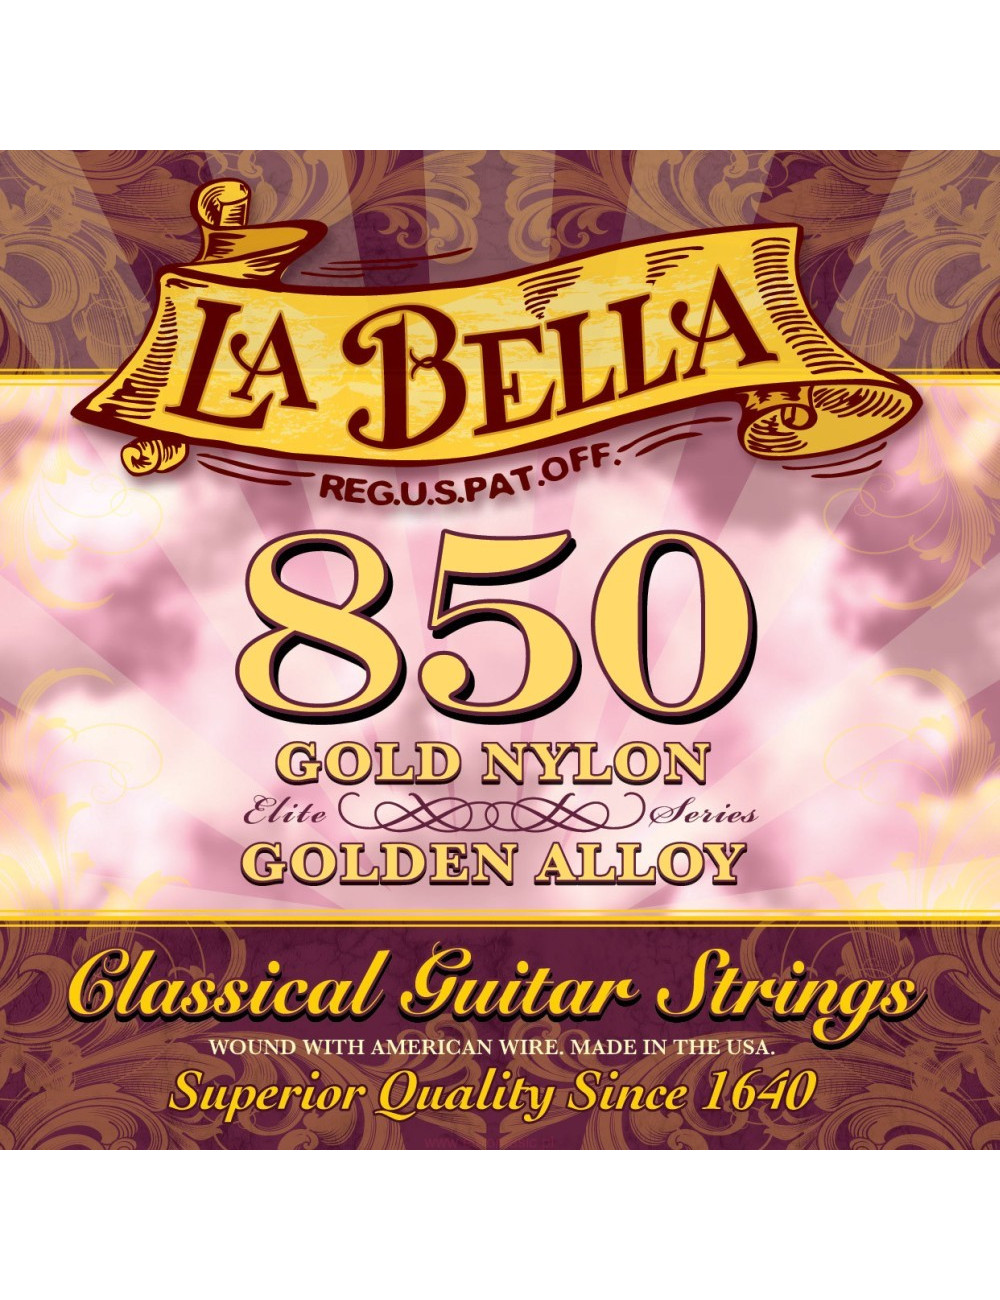 La Bella 850